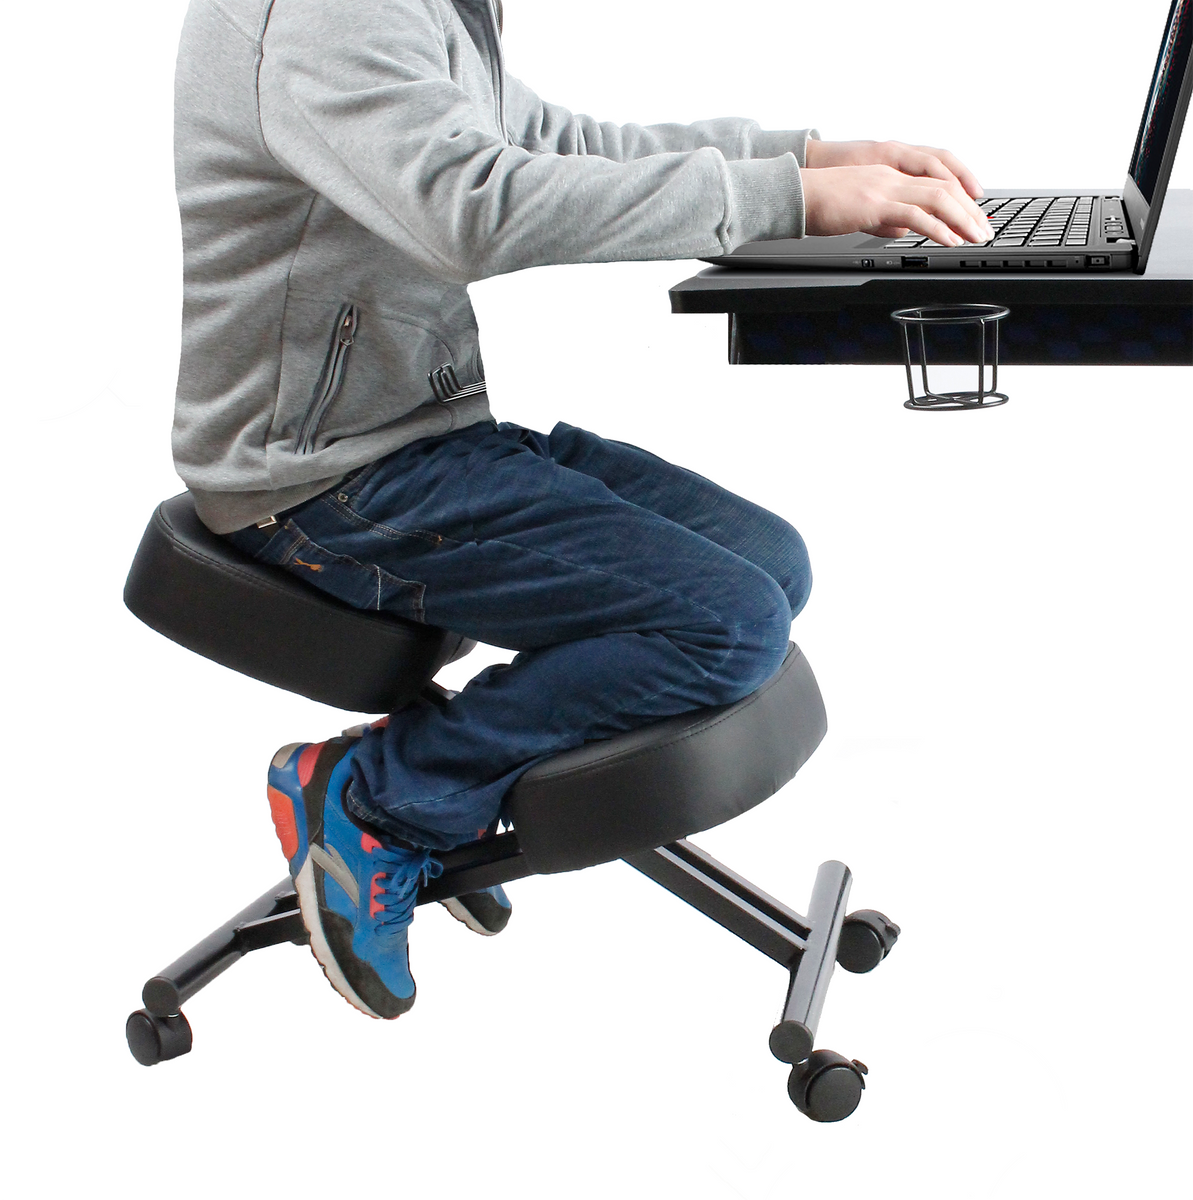 Ergonomic Kneeling Chair - Defy Desk